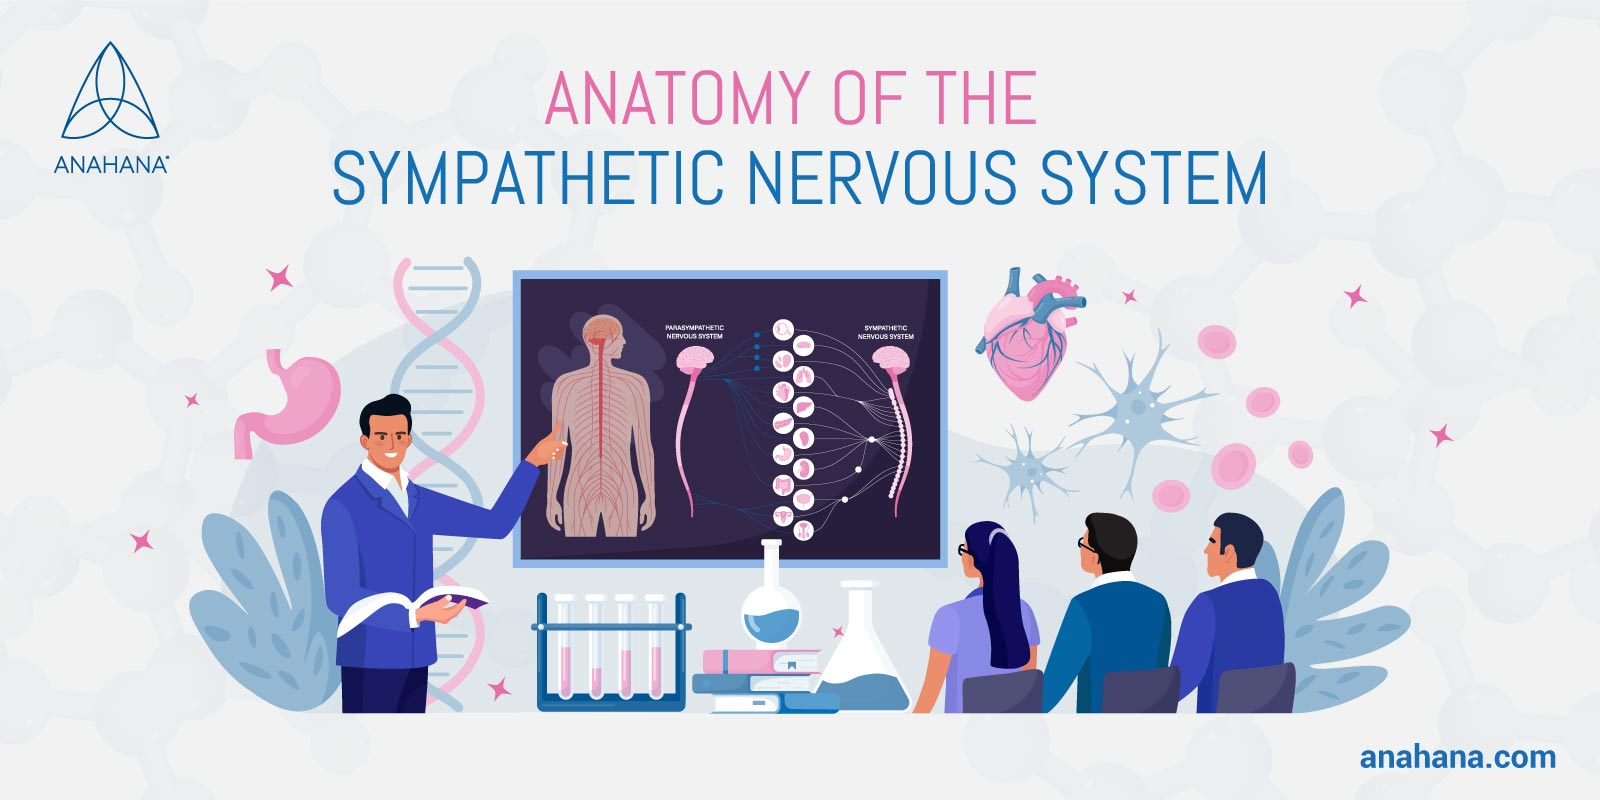 A szimpatikus idegrendszer anatómiája